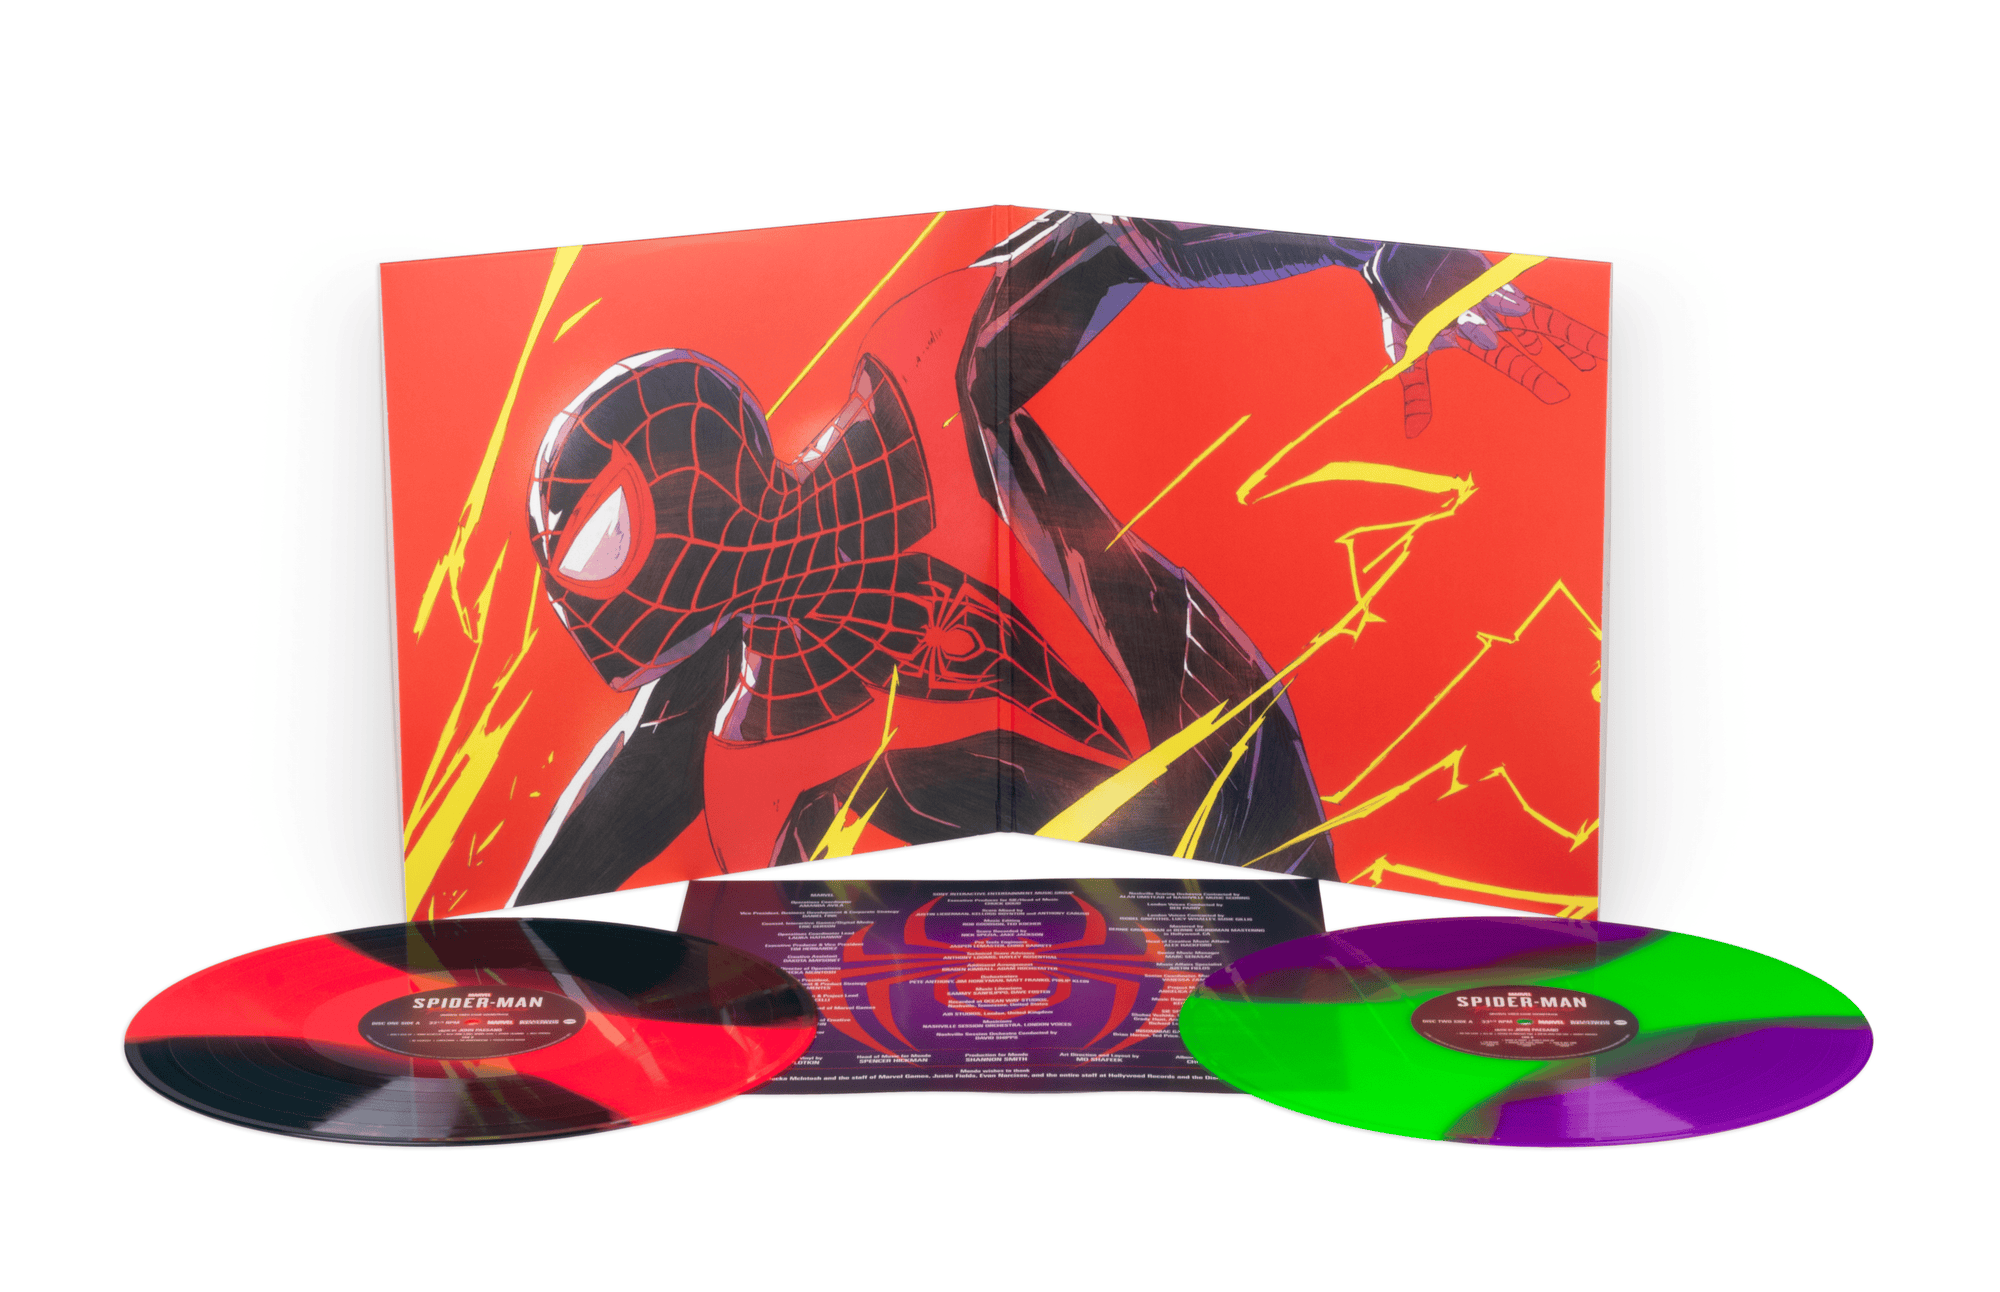 Marvel's Spider Man: Miles Morales (Original Video Game Soundtrack)